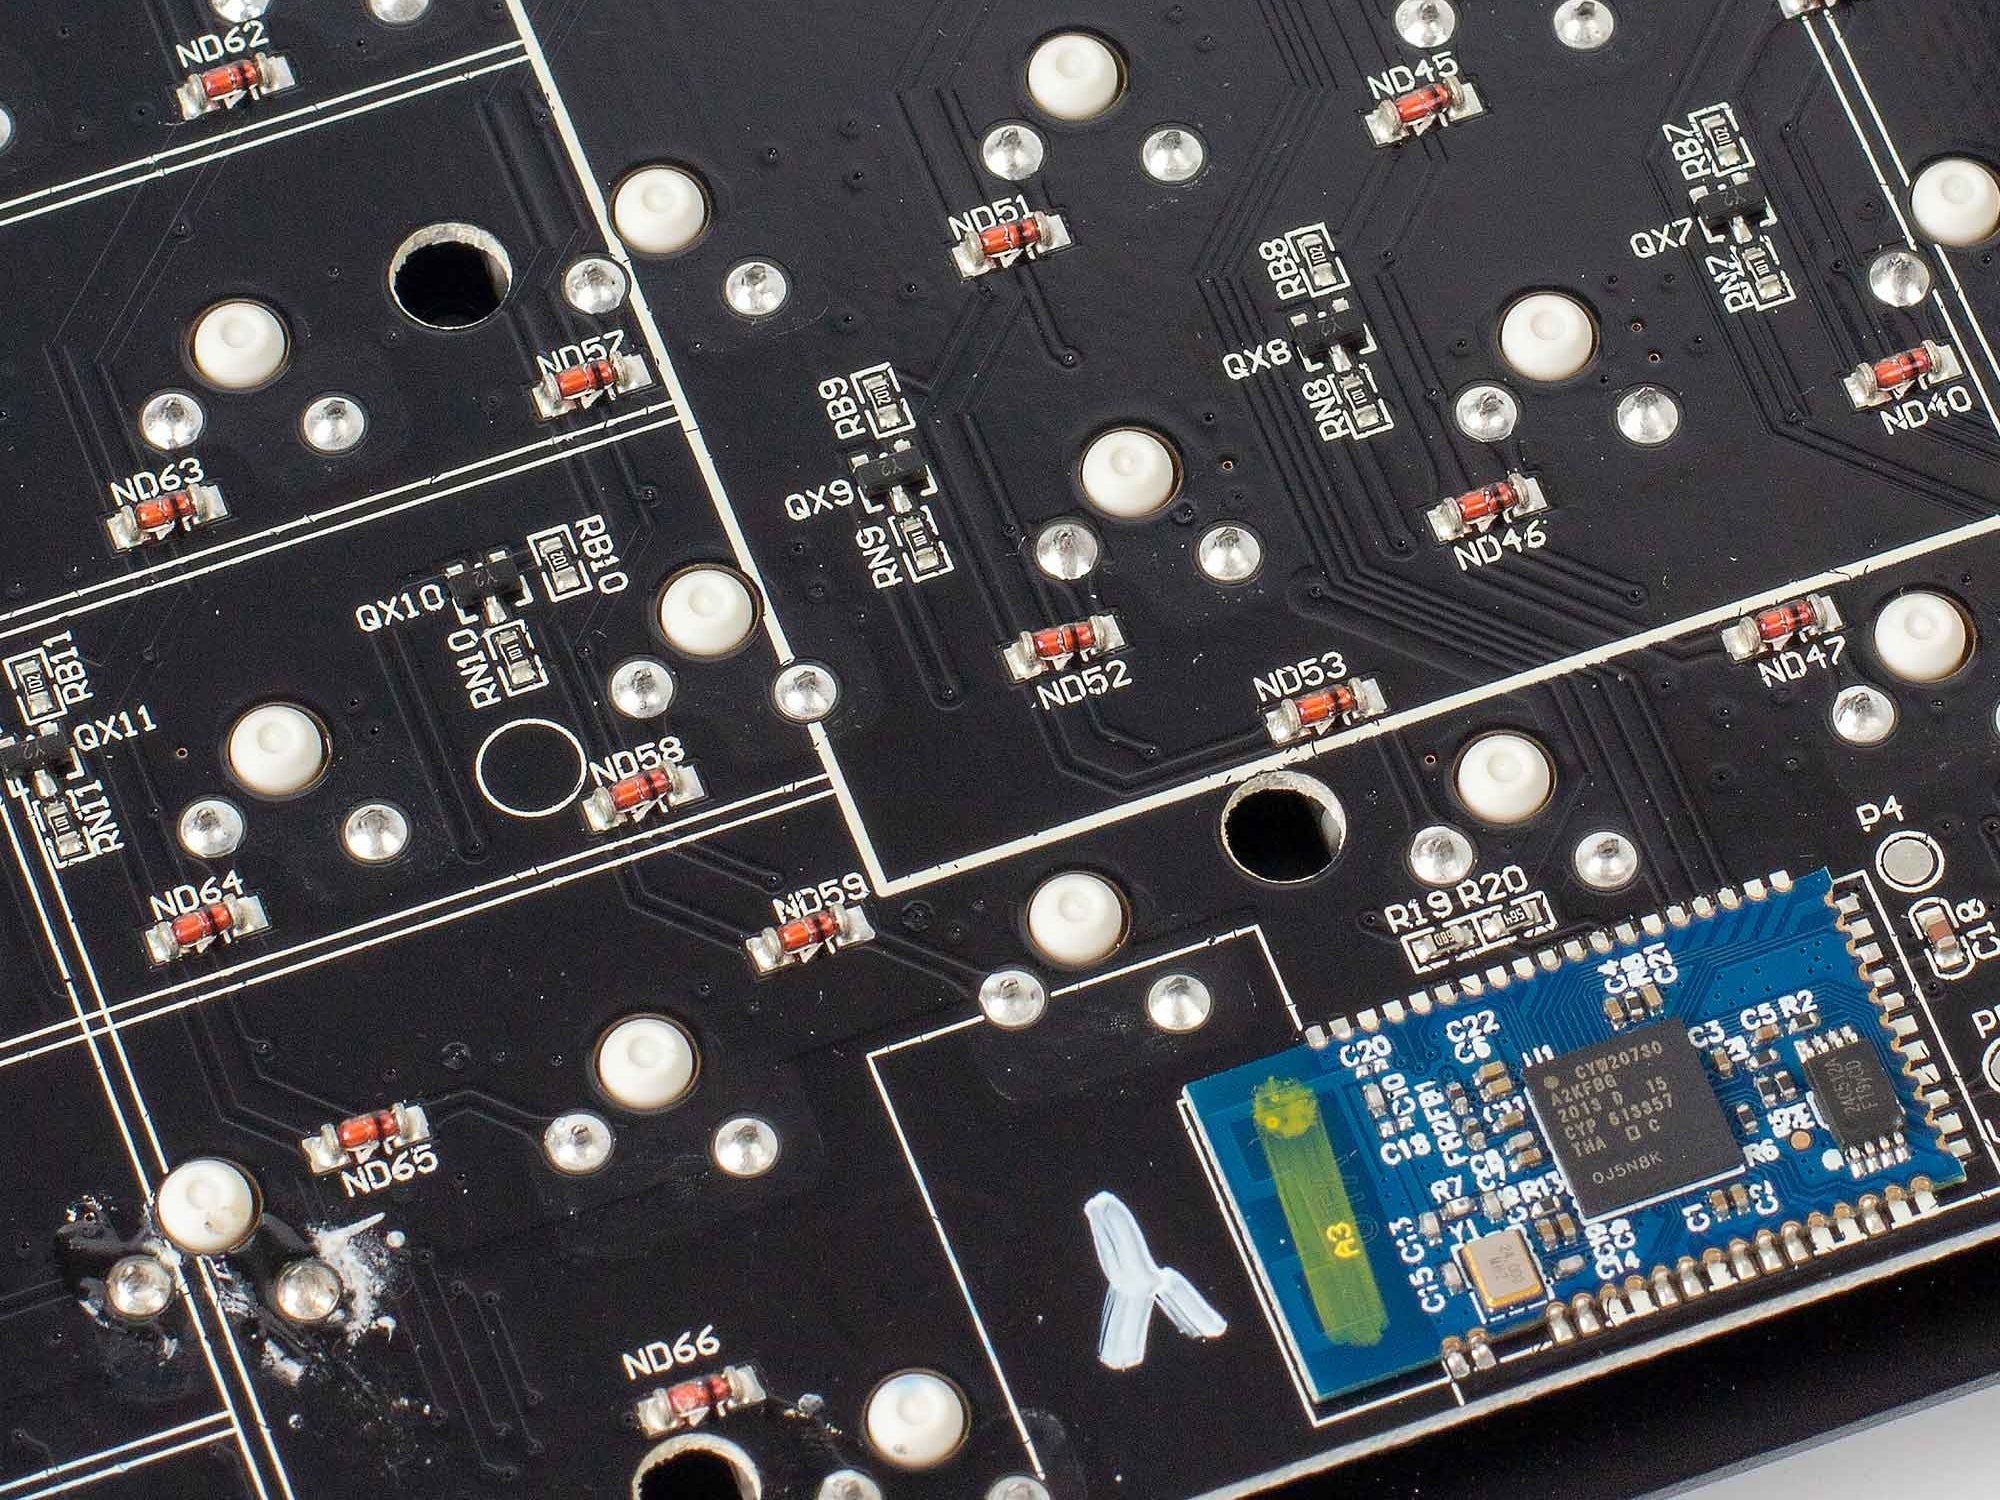 Keychron soldered PCB